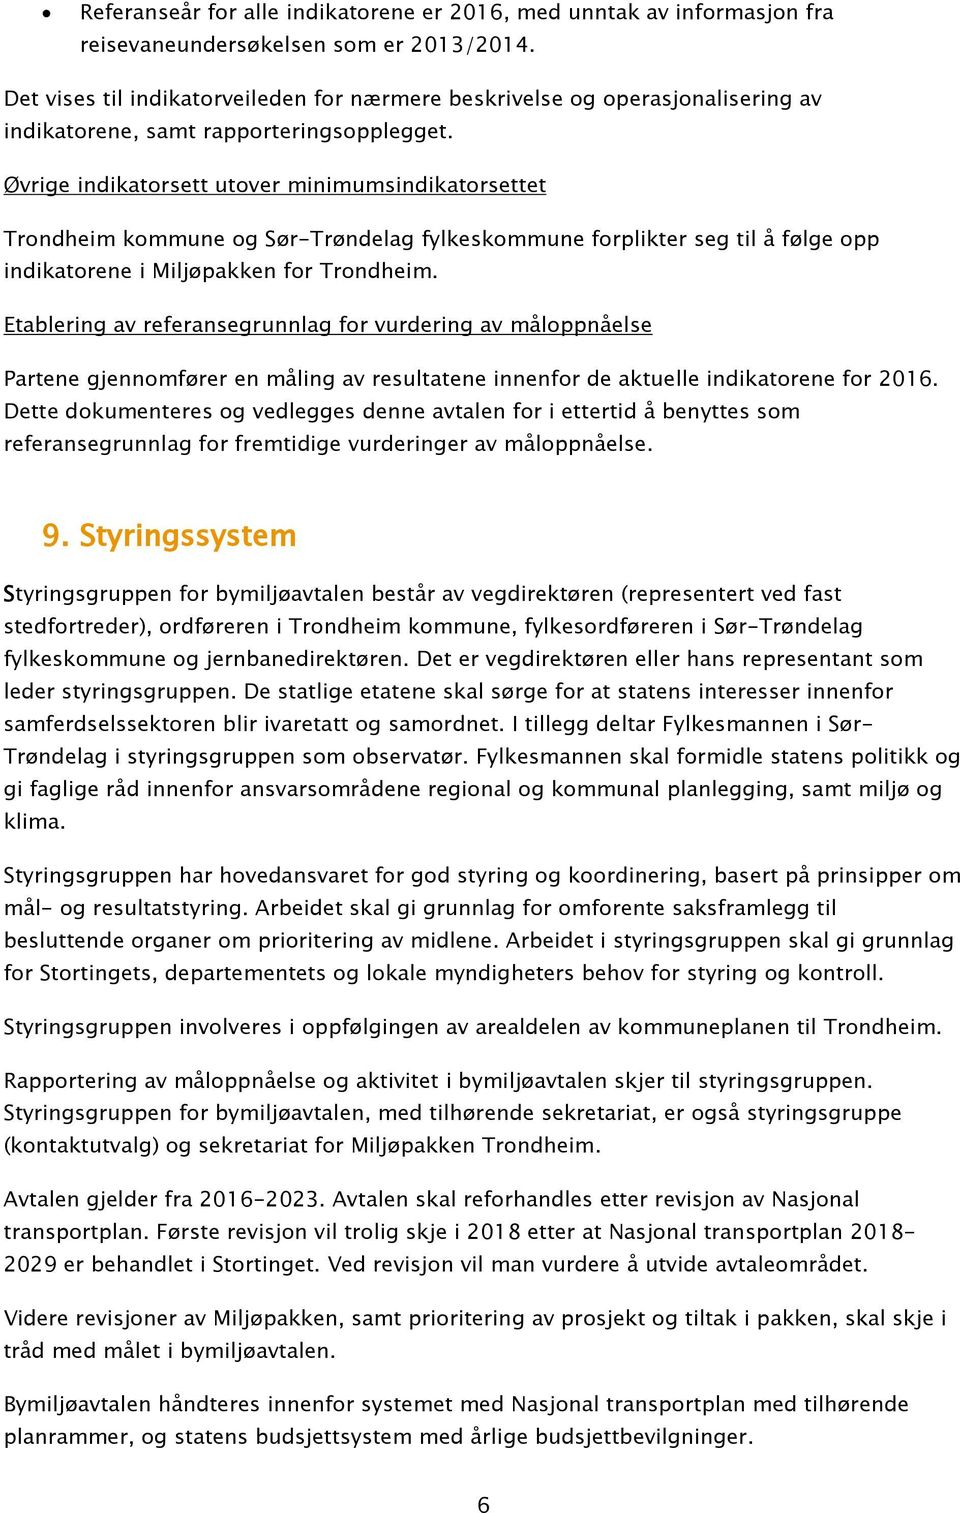 Øvrige indikatorsett utover minimumsindikatorsettet Trondheim kommune og Sør-Trøndelag fylkeskommune forplikter seg til å følge opp indikatorene i Miljøpakken for Trondheim.